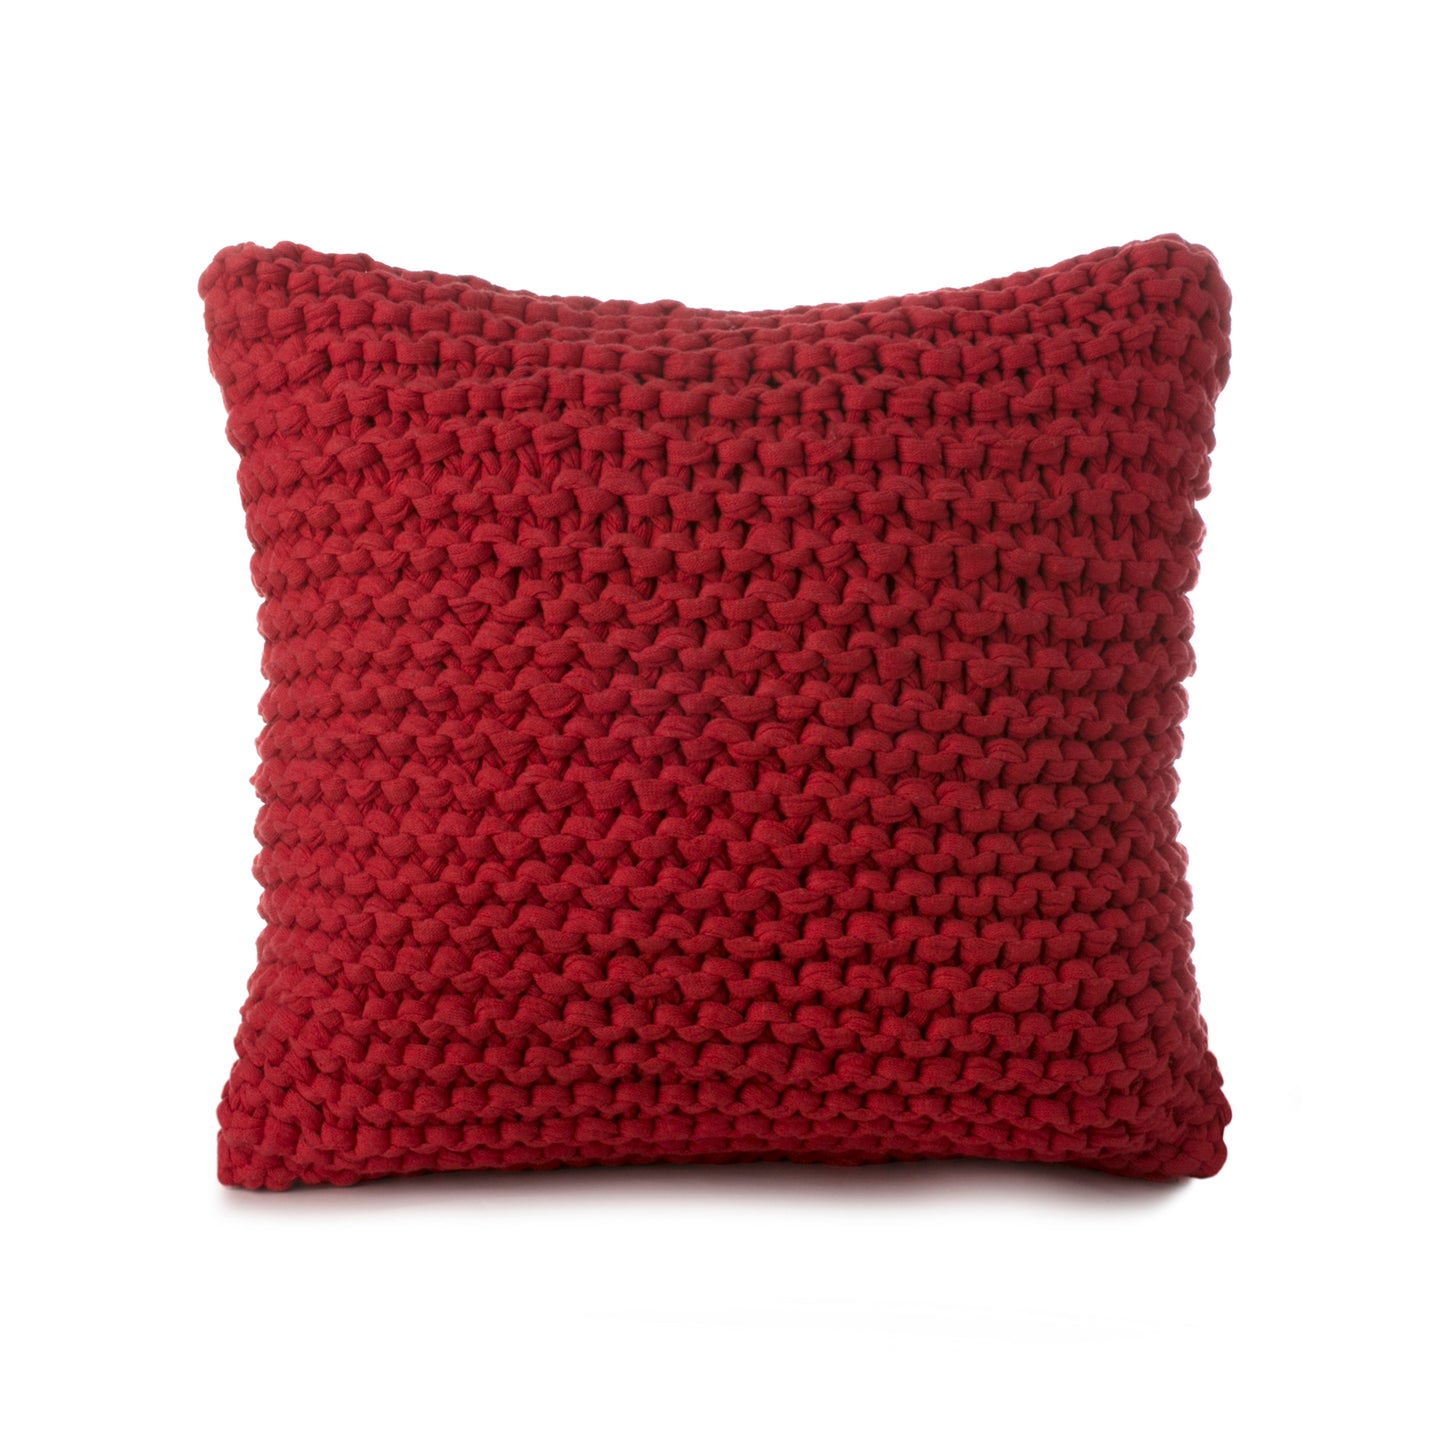 Almofada em tricô artesanal Vermelha, frente e verso, com fio 100% algodão. Fechamento com zíper, possibilitando a remoção da capa para lavagem. Dimensões: Altura - 50cm; Largura - 50cm. 